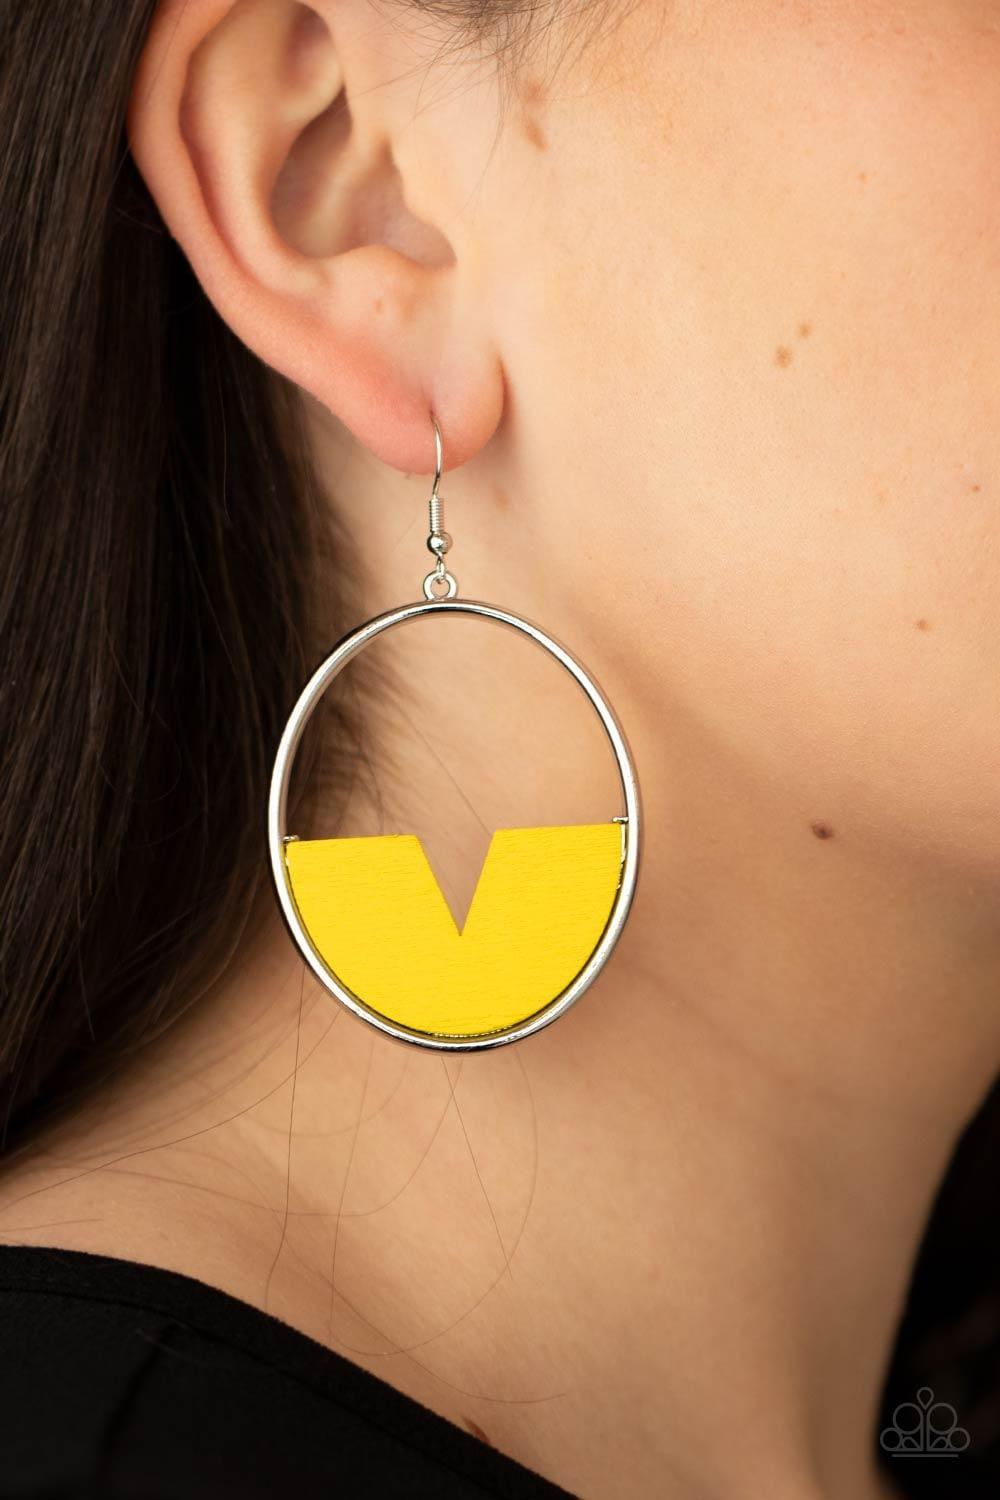 Paparazzi Accessories - Island Breeze - Yellow Earrings - Bling by JessieK